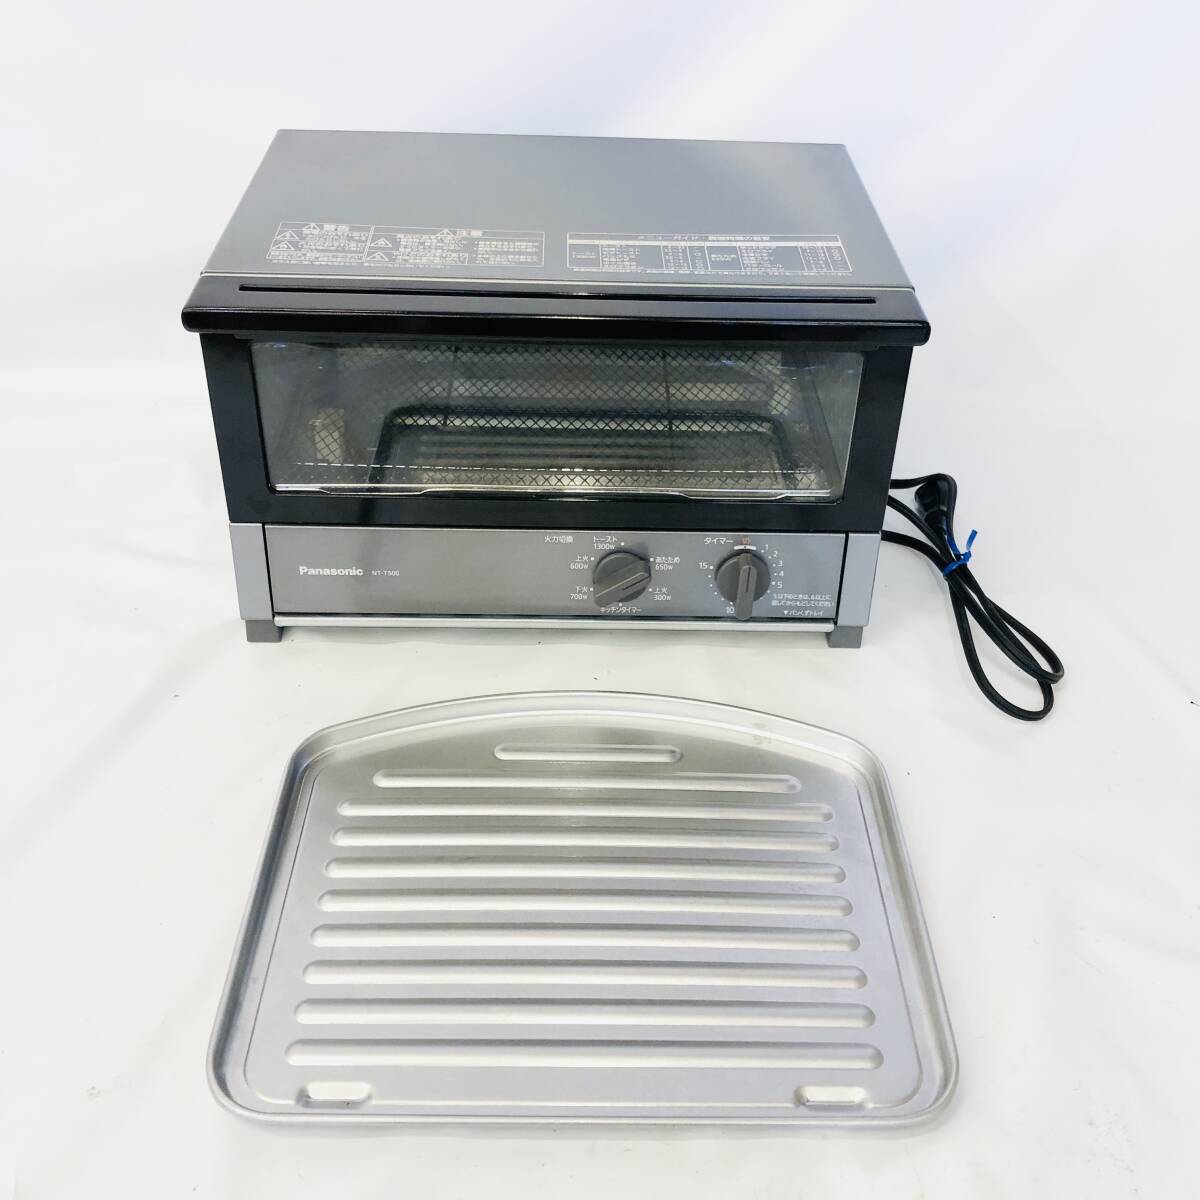 [1000 jpy start ] Panasonic oven toaster 5 -step heating power switch dark metallic NT-T500-K